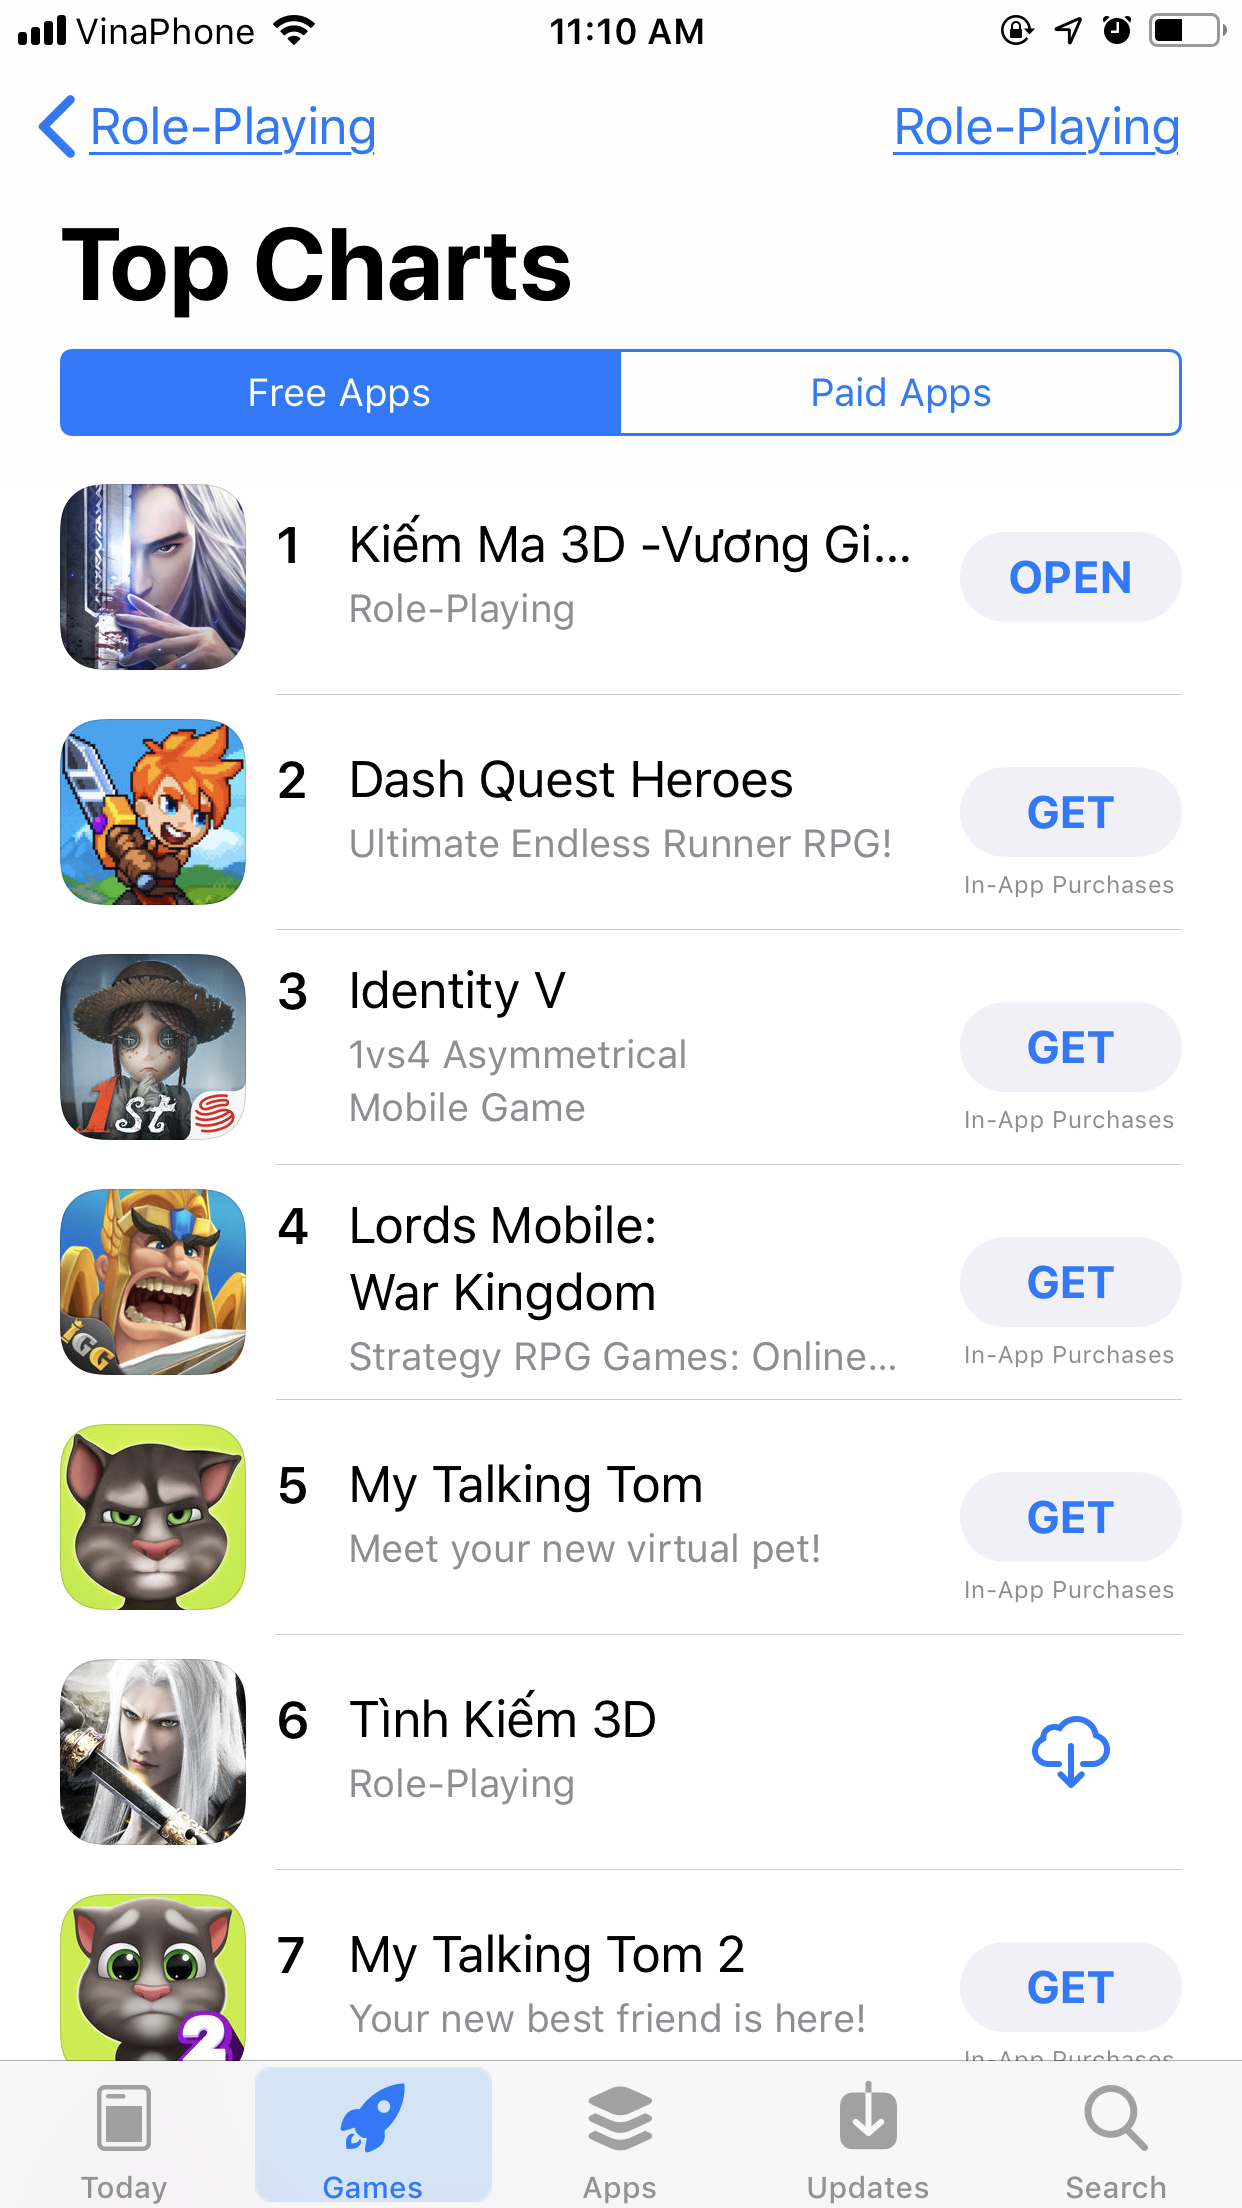 Kiếm Ma 3D Mobile đạt Top 1 lượt tải trên Appstore và Google Play khi còn chưa ra mắt